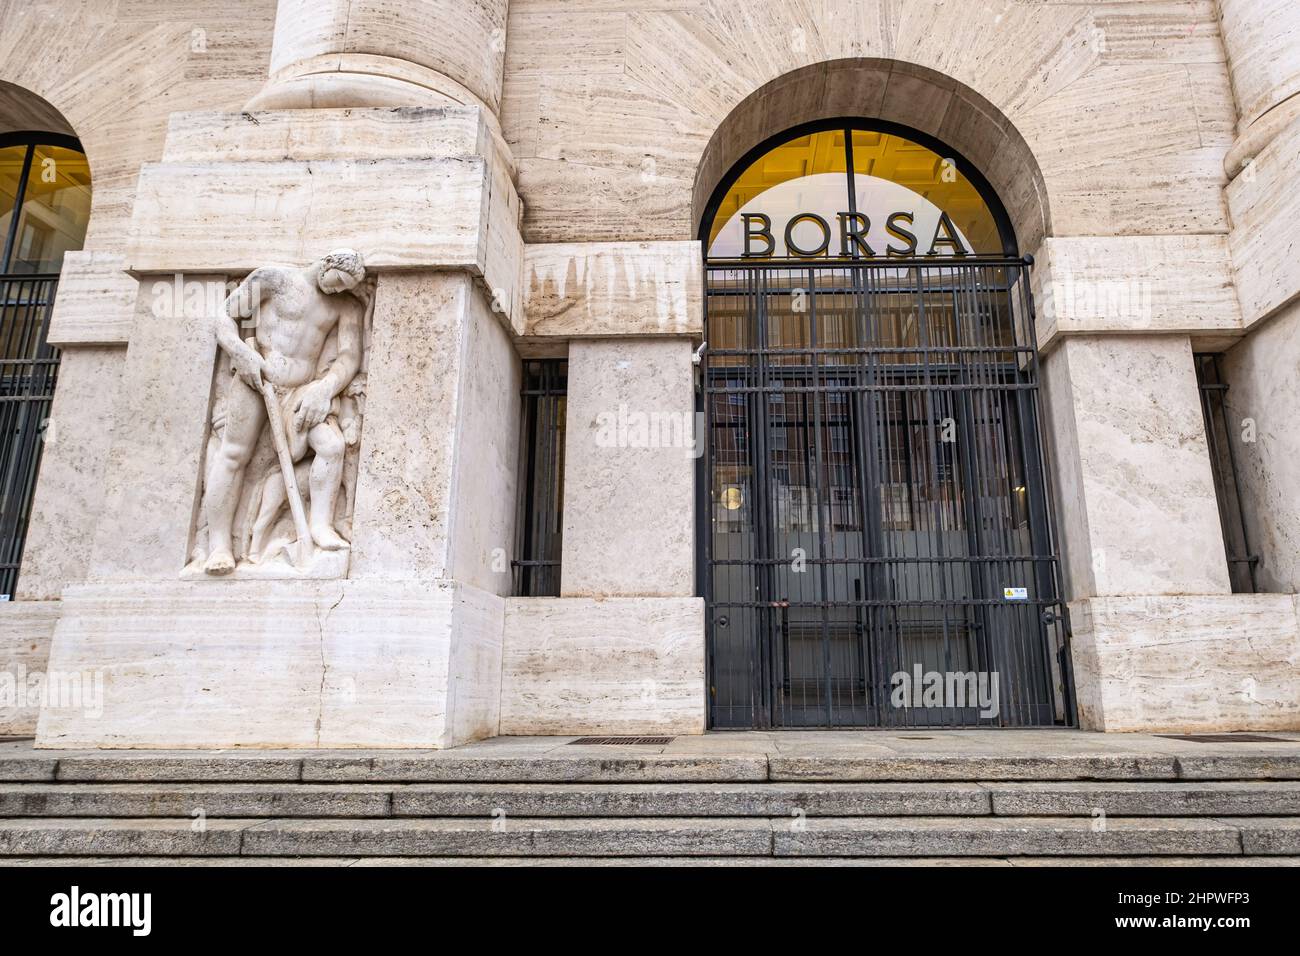 Ingresso alla Borsa di Milano in Piazza Affari - l'edificio mostra il tipico stile fascista e oggi è un importante punto di riferimento a Milano Foto Stock